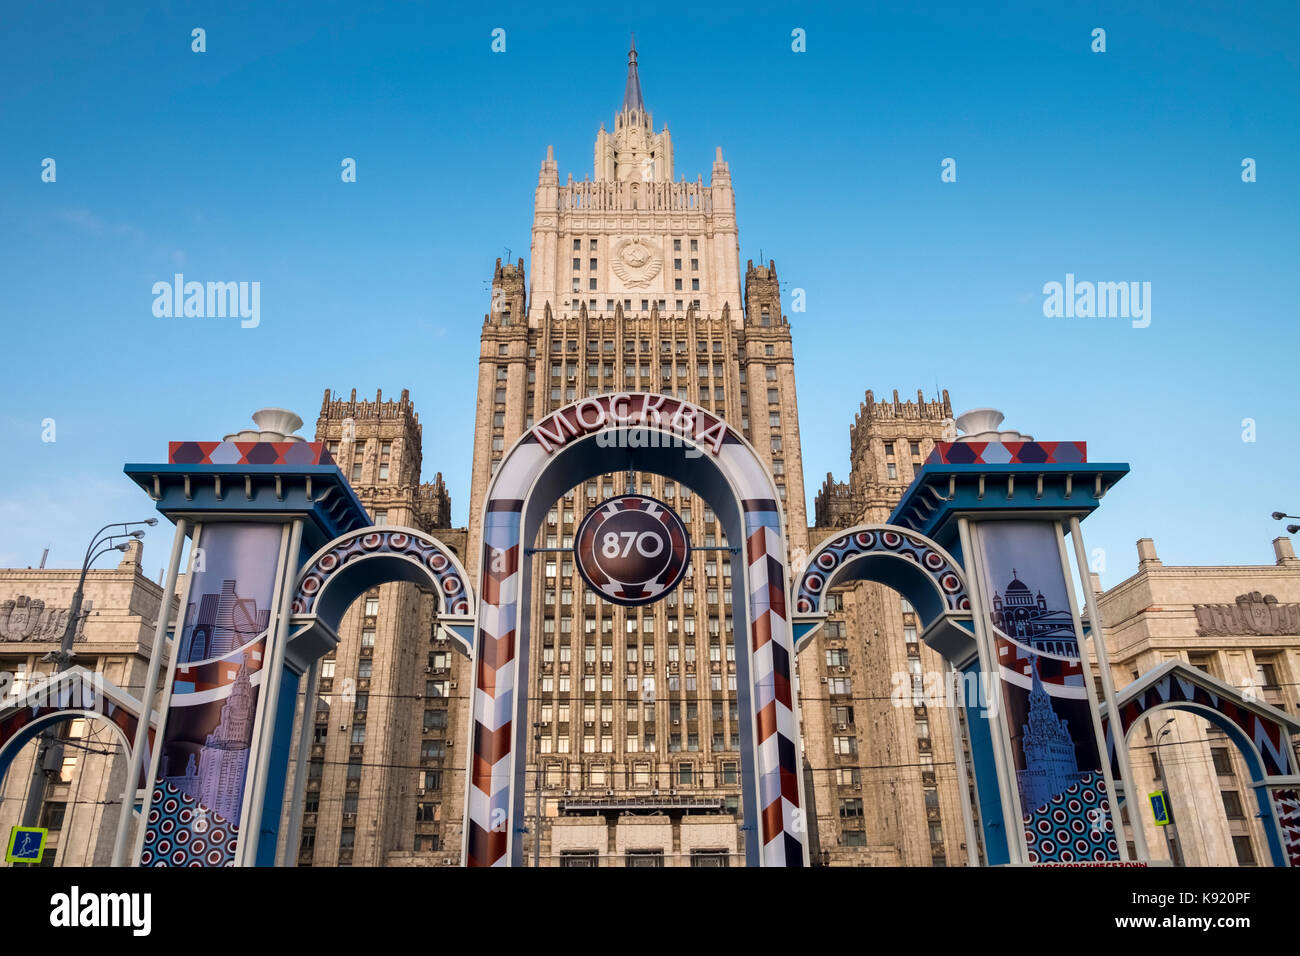 L'extérieur de l'architecture du ministère des affaires étrangères de la Russie, bâtiment principal de smolenskaya pl sennaya, Moscou, Russie. Banque D'Images